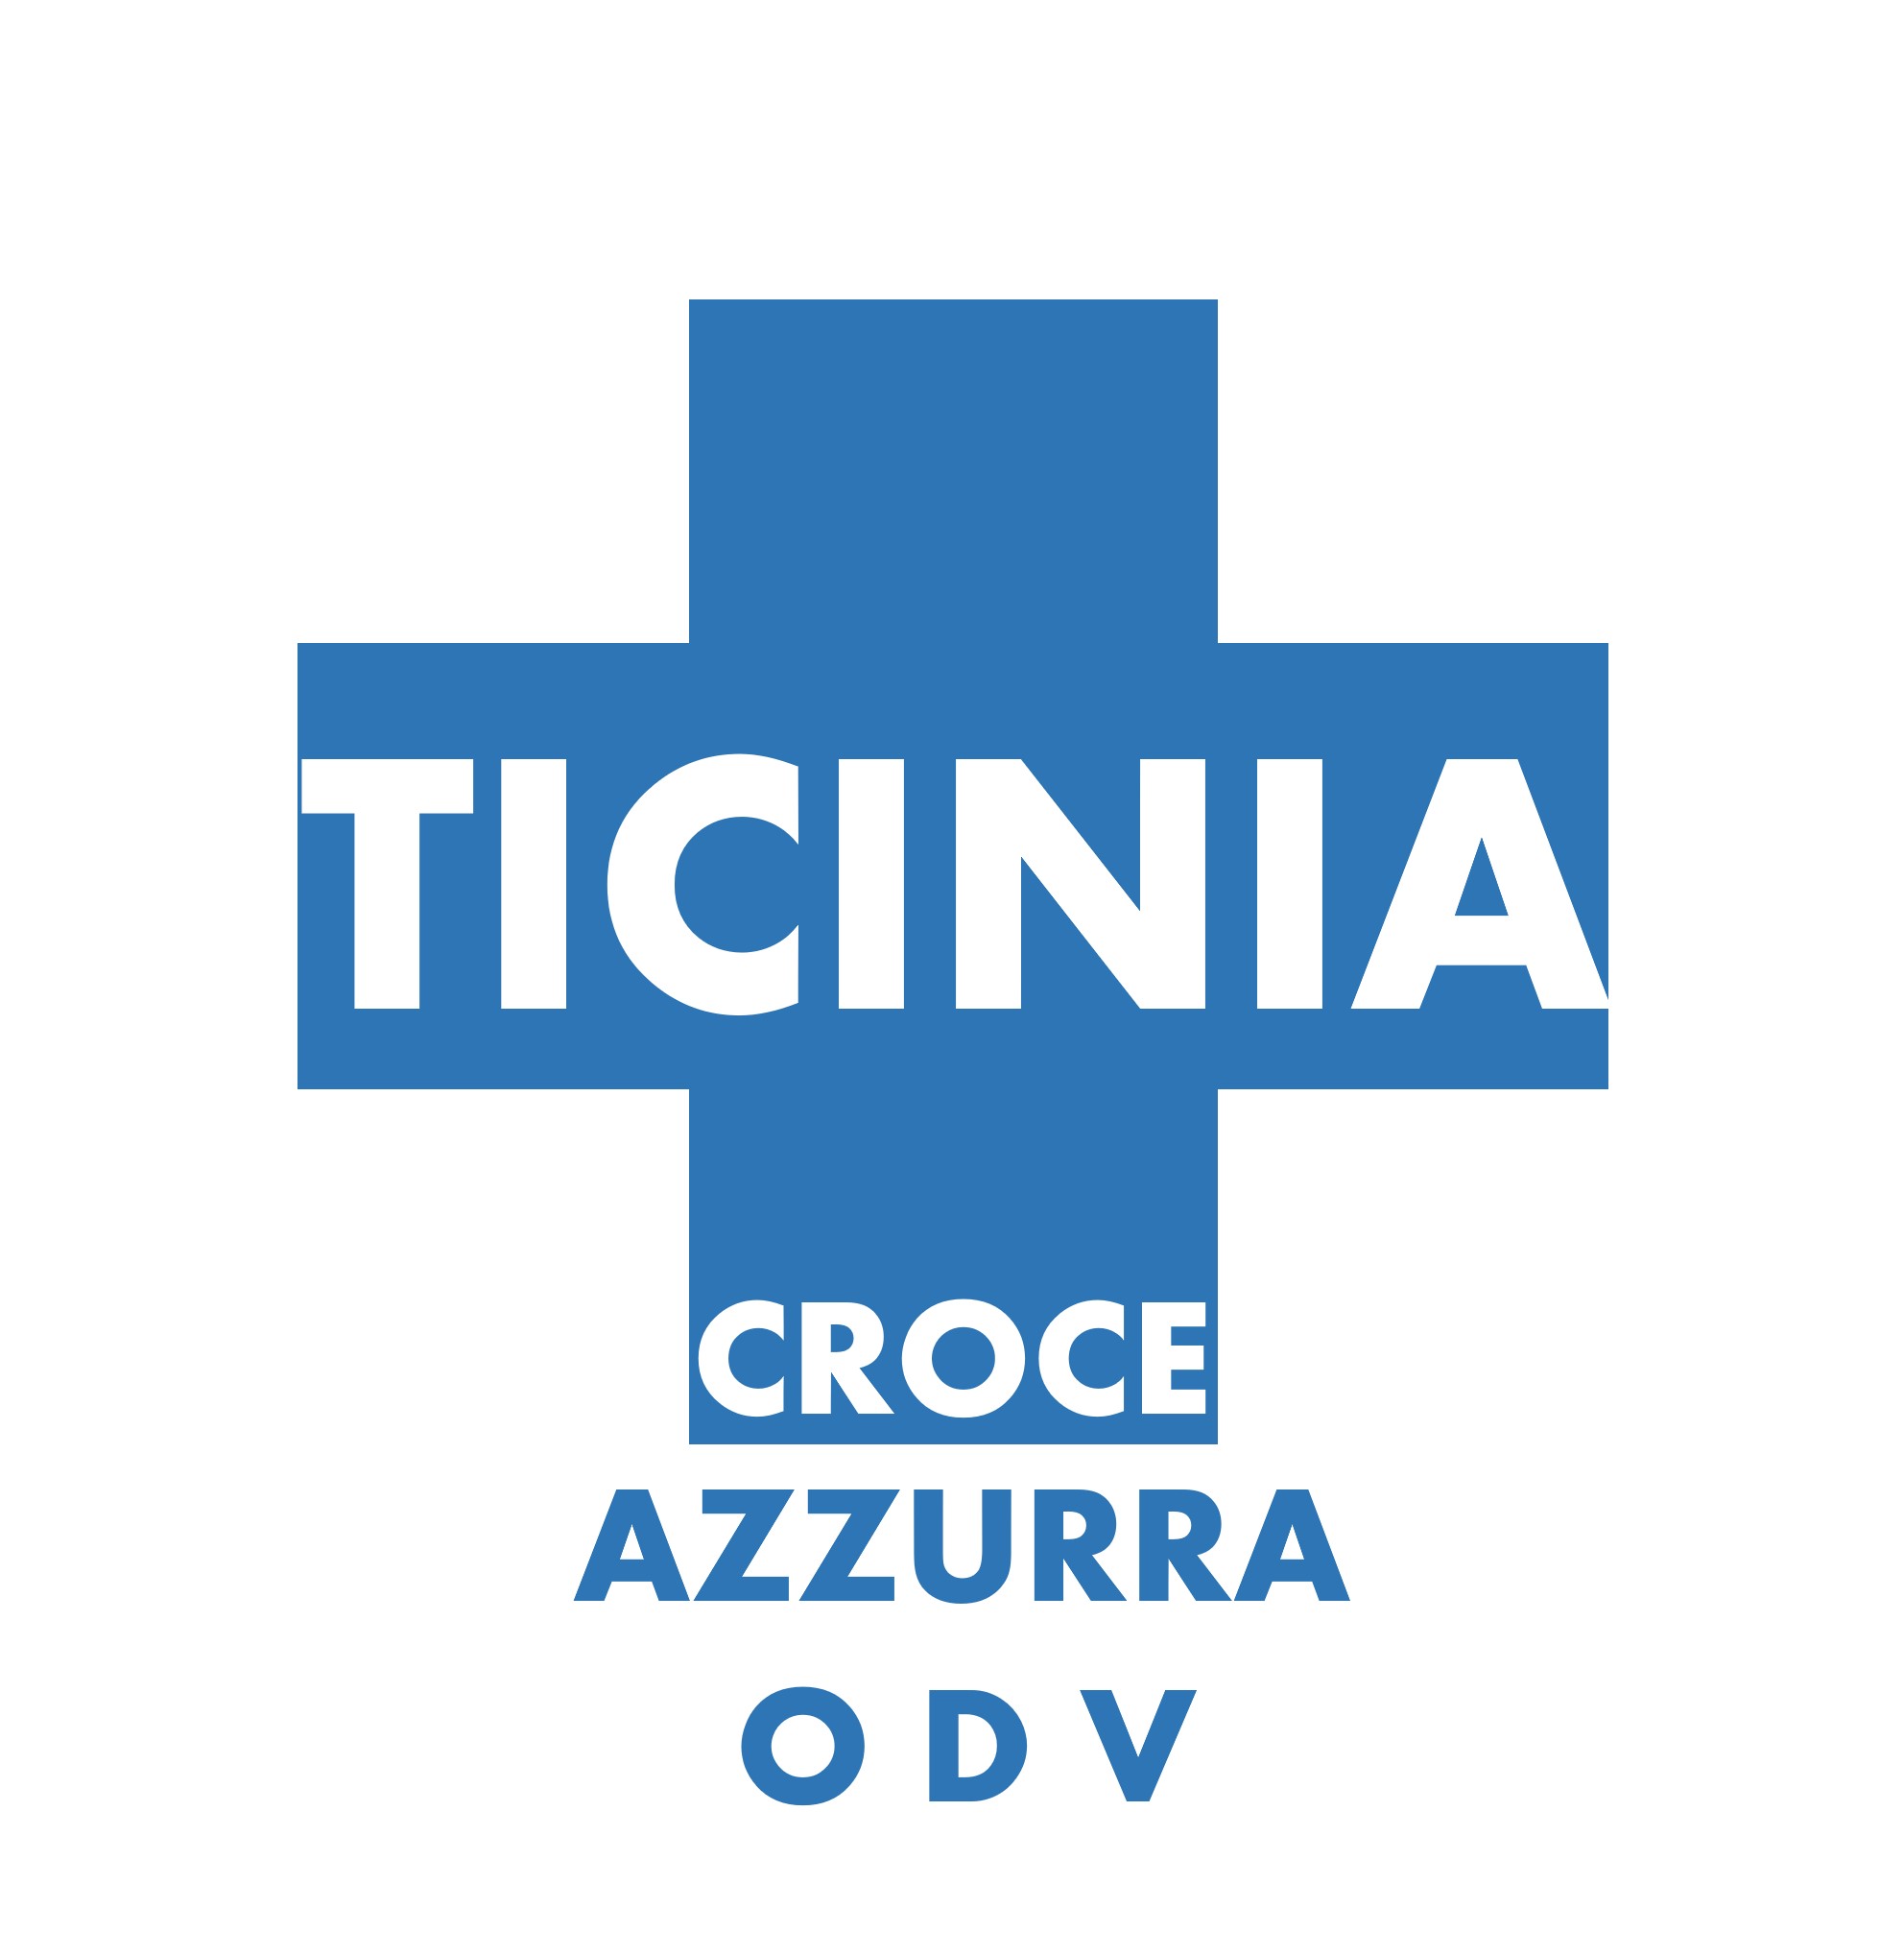 Archivio Storico Croce Azzurra Ticinia - Croce Azzurra Ticinia ODV - 2015 - Comunicato Direttivo Associazione